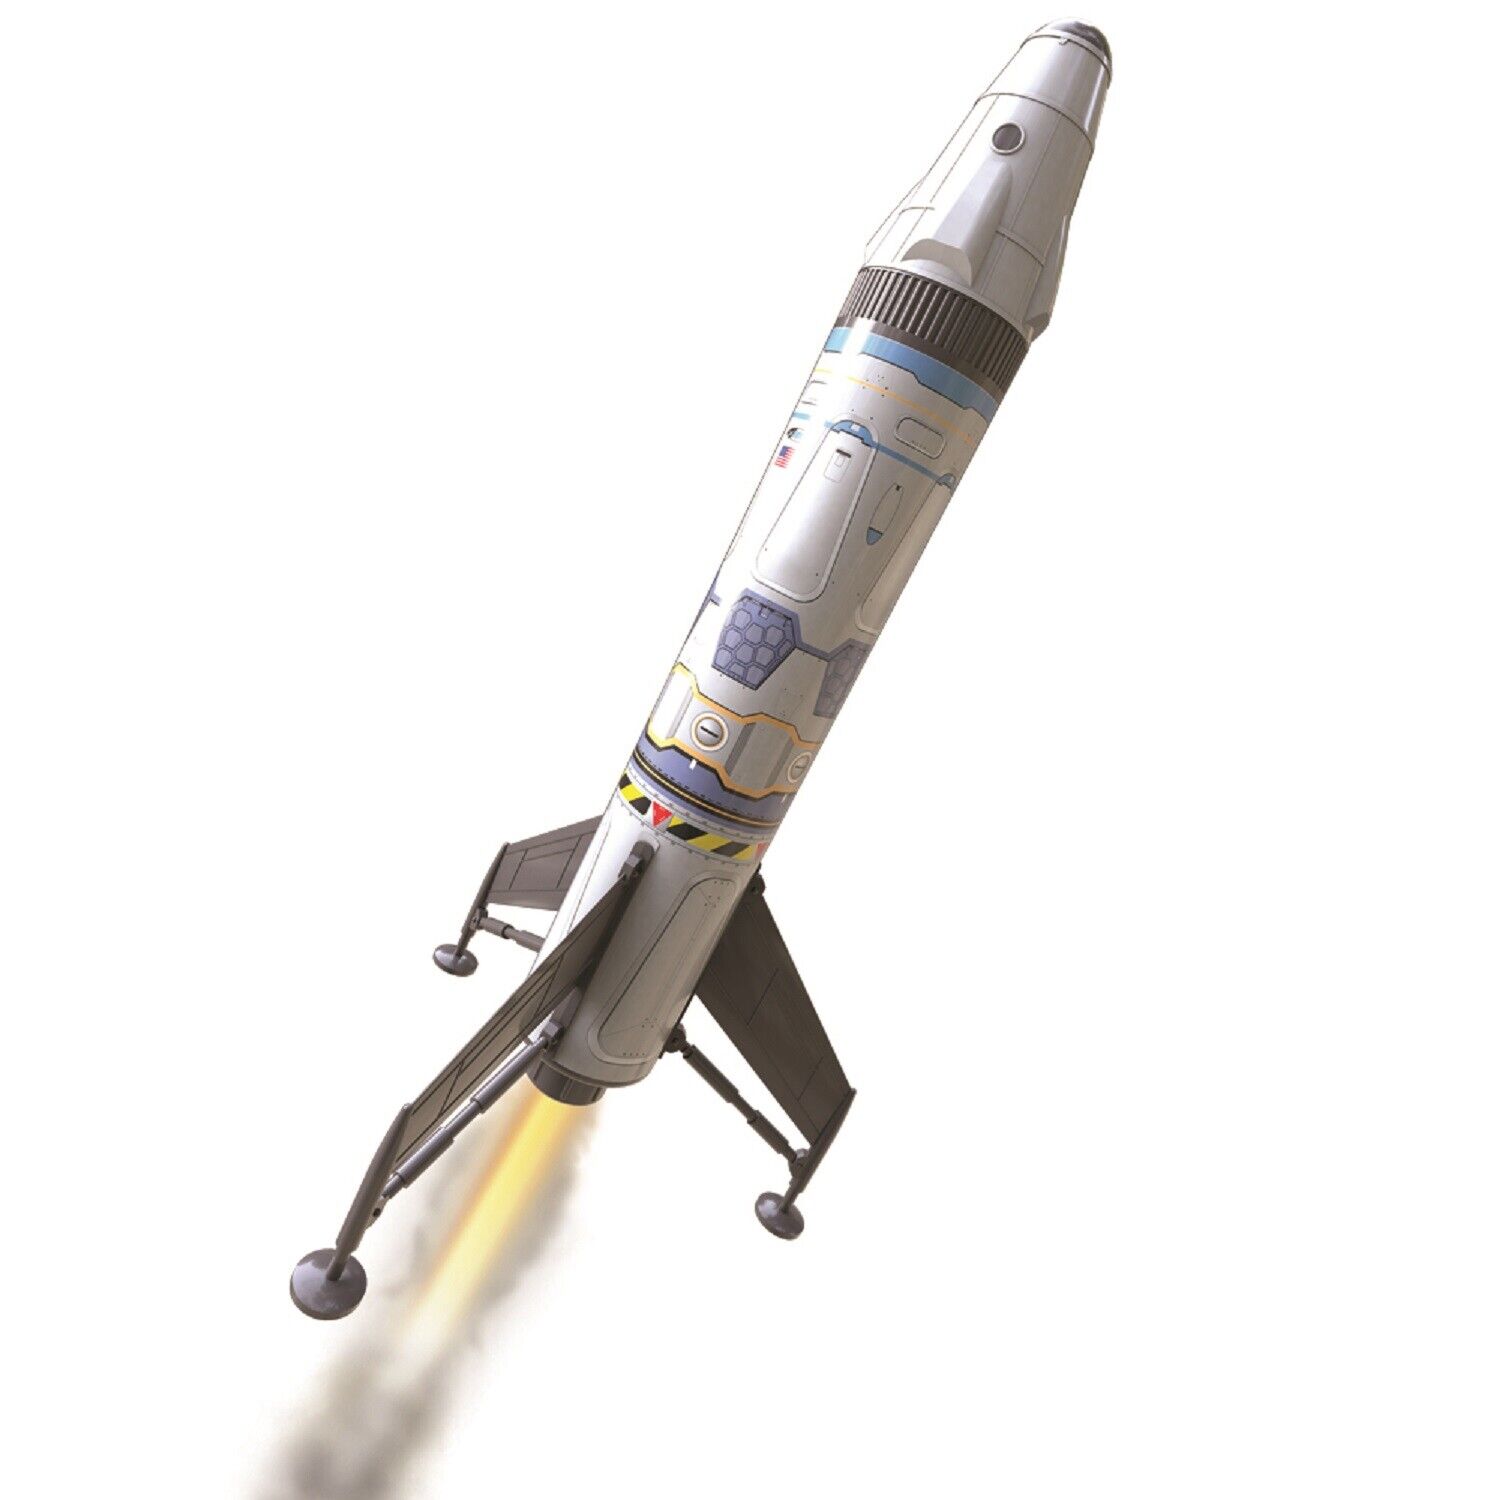 Beginner Estes Mav Rocket Kit | Ready to Fly